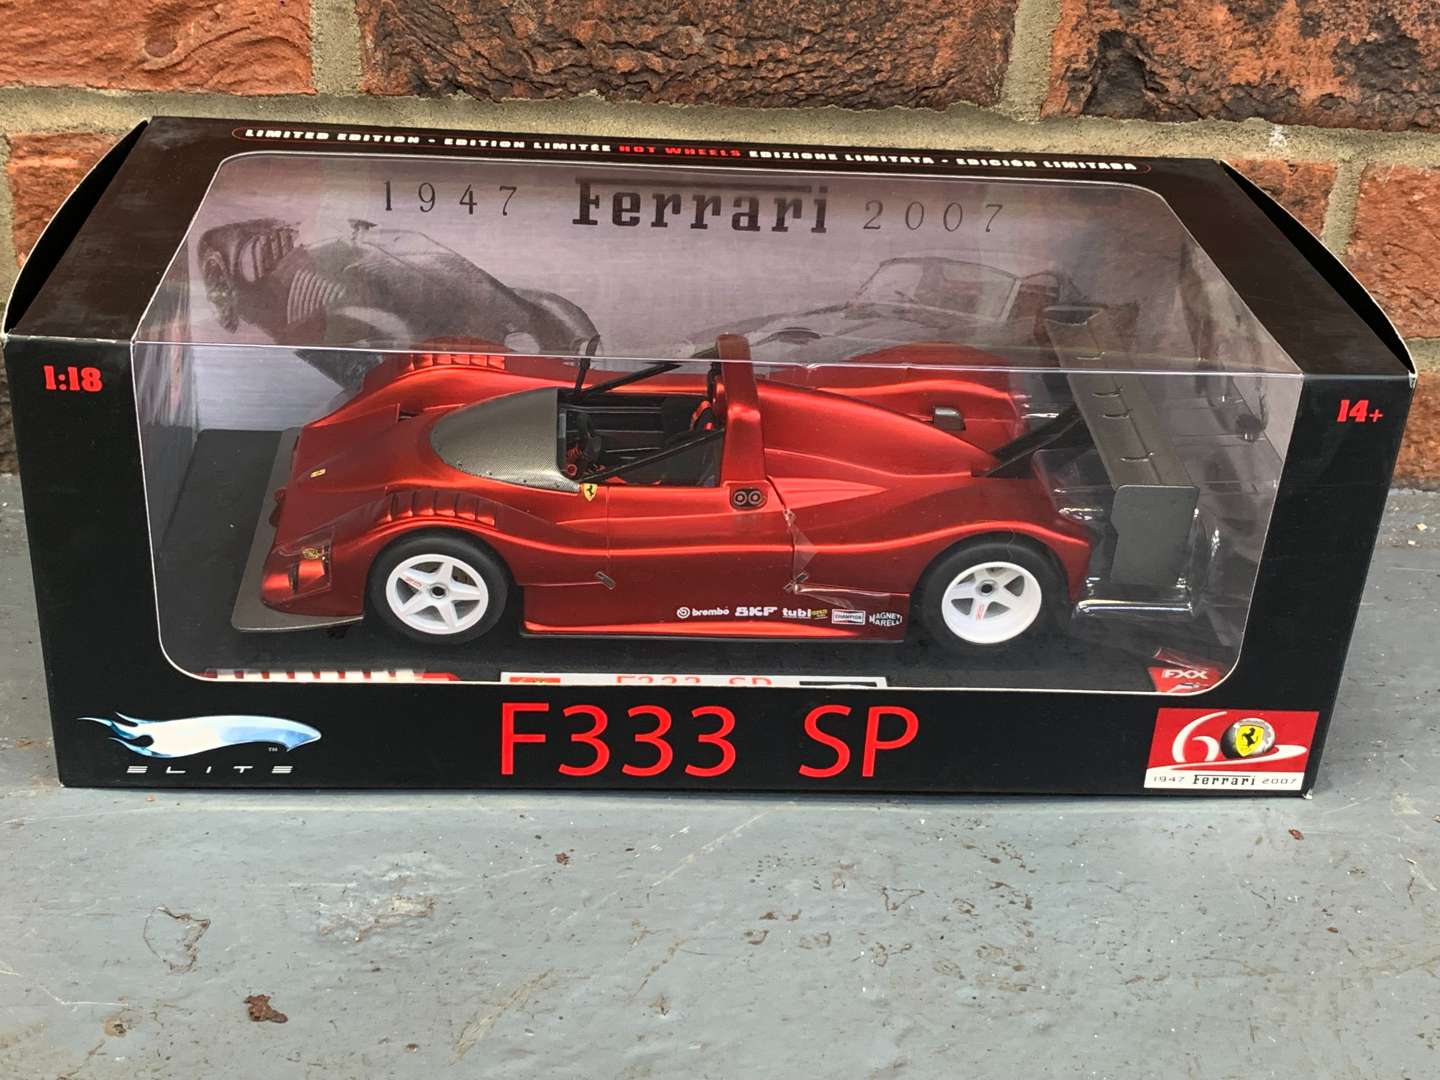 <p>Elite 1:18 Scale Boxed Ferrari F333 SP Car</p>